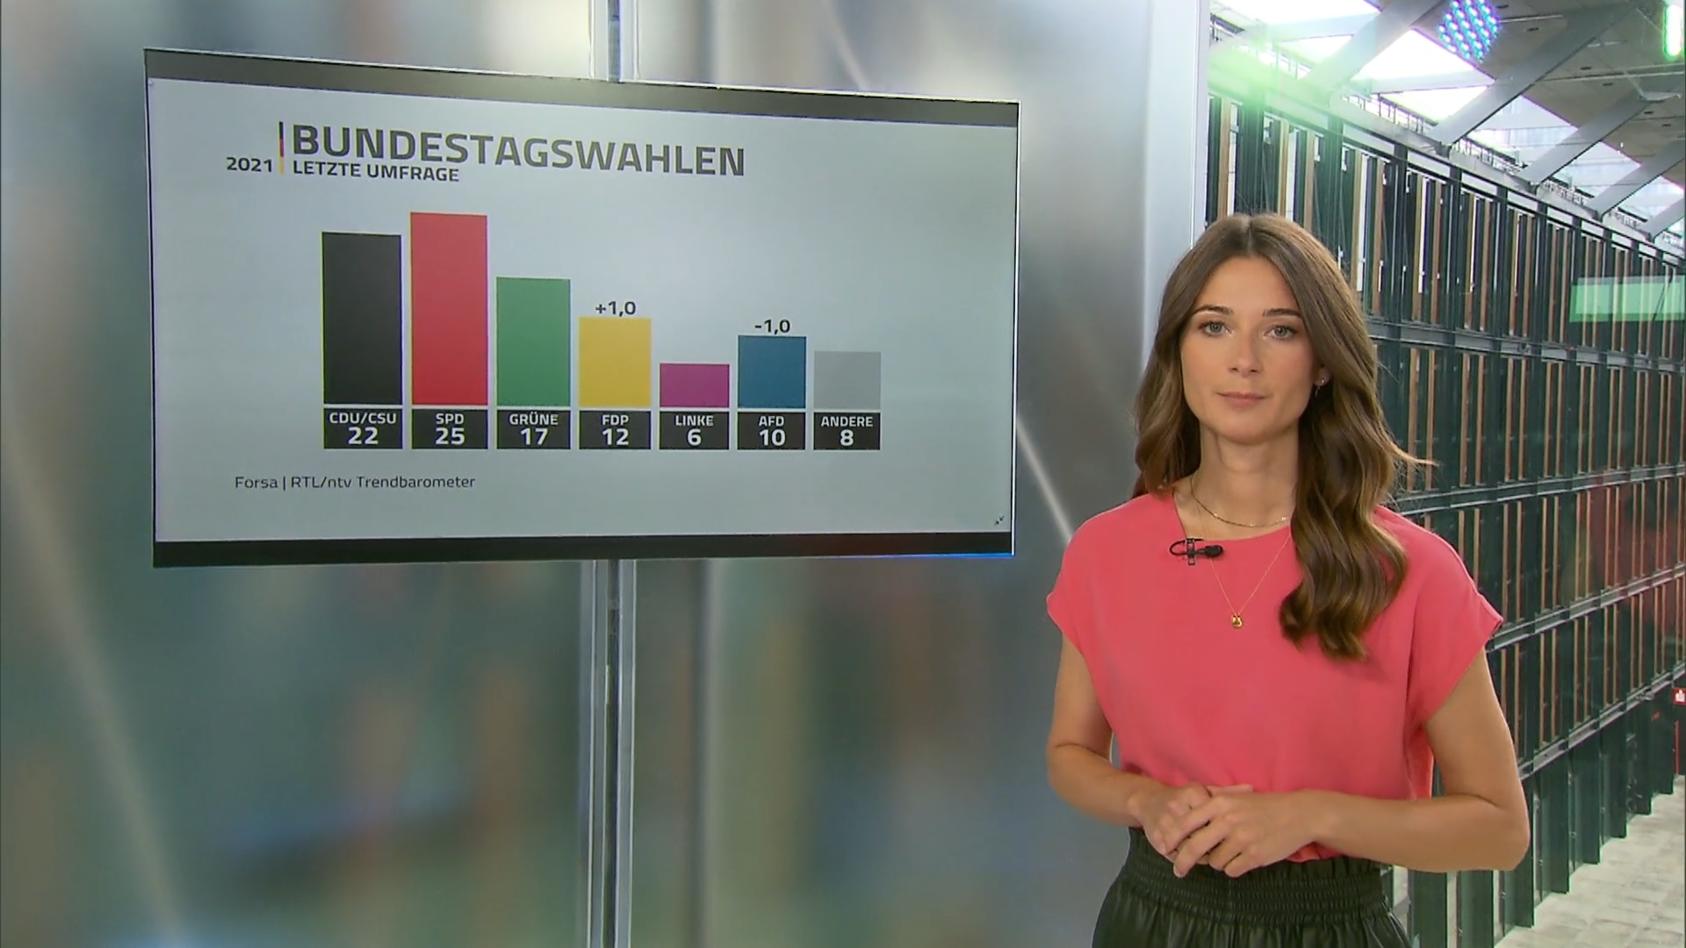 Das Rennen ums Kanzleramt bleibt eng RTL/ntv-Trendbarometer